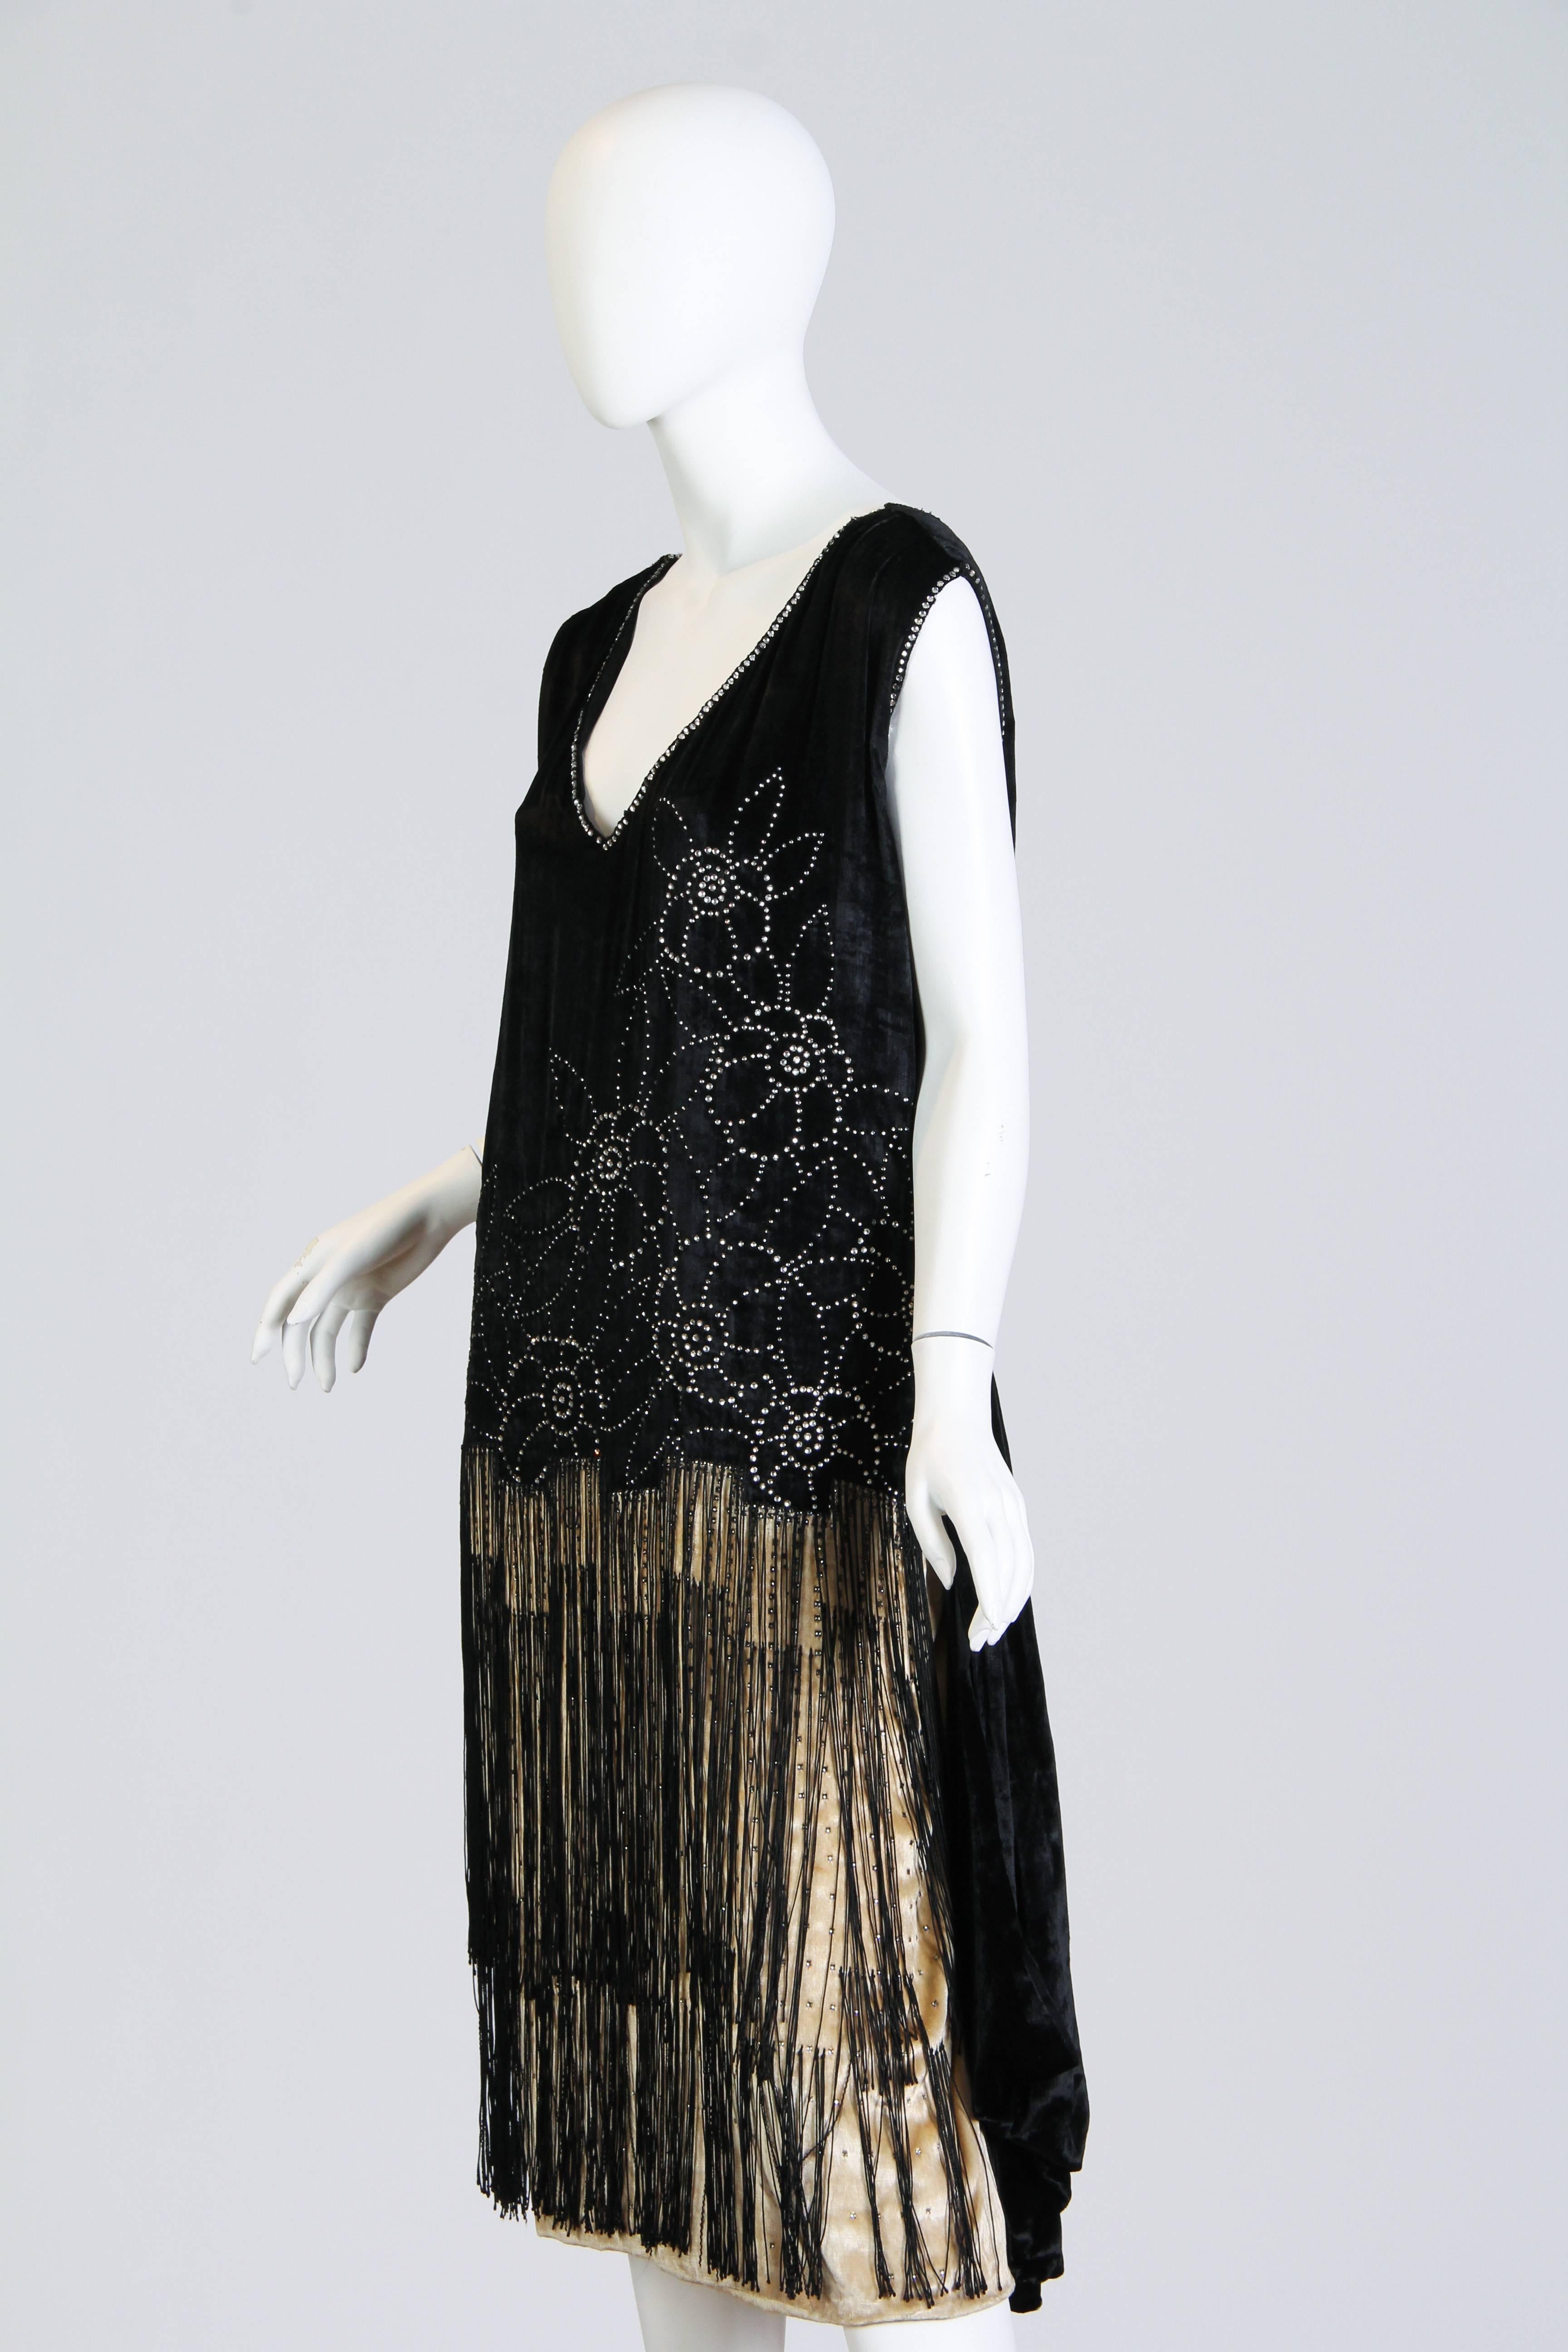 1920s velvet dress